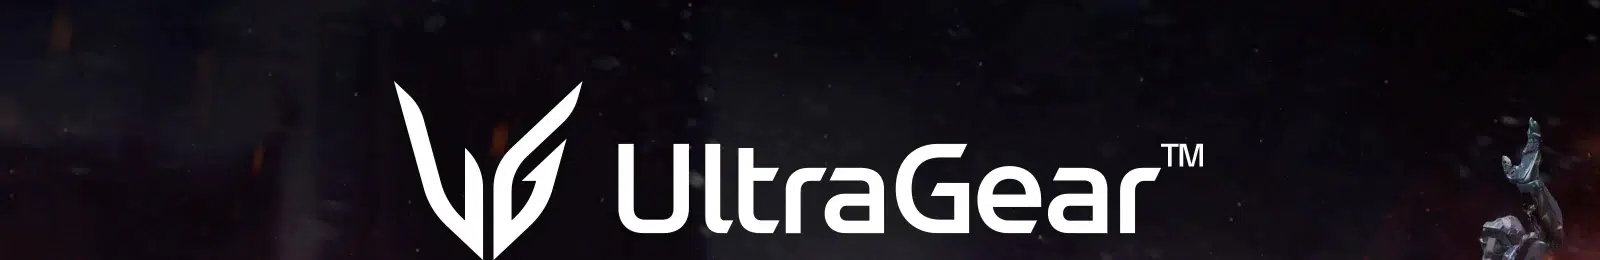 UltraGear™ Oyun Monitörü